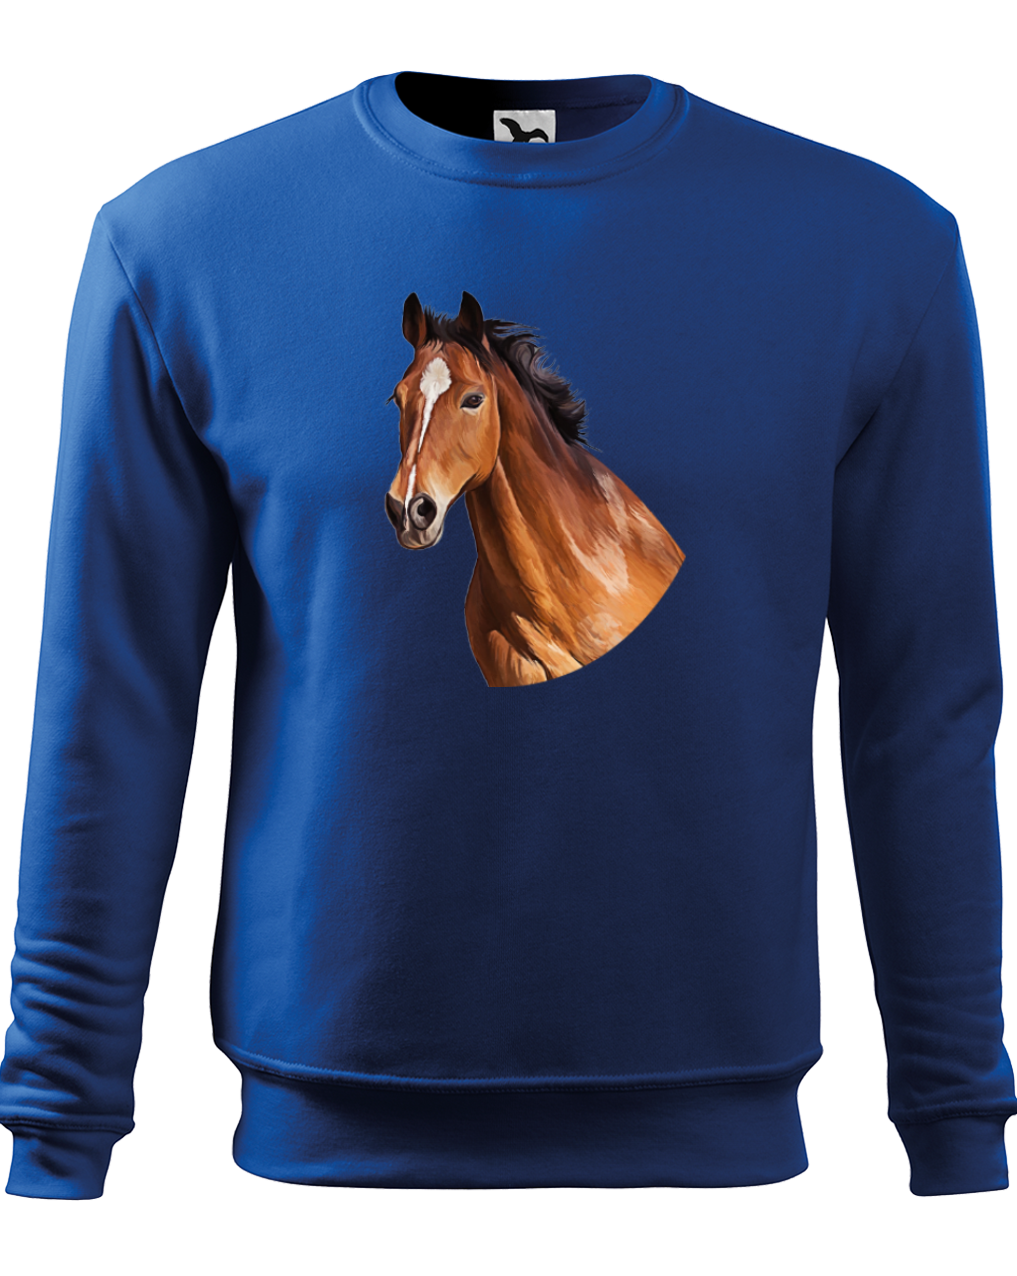 Mikina s koněm - Hnědák Velikost: L, Barva: Královská modrá